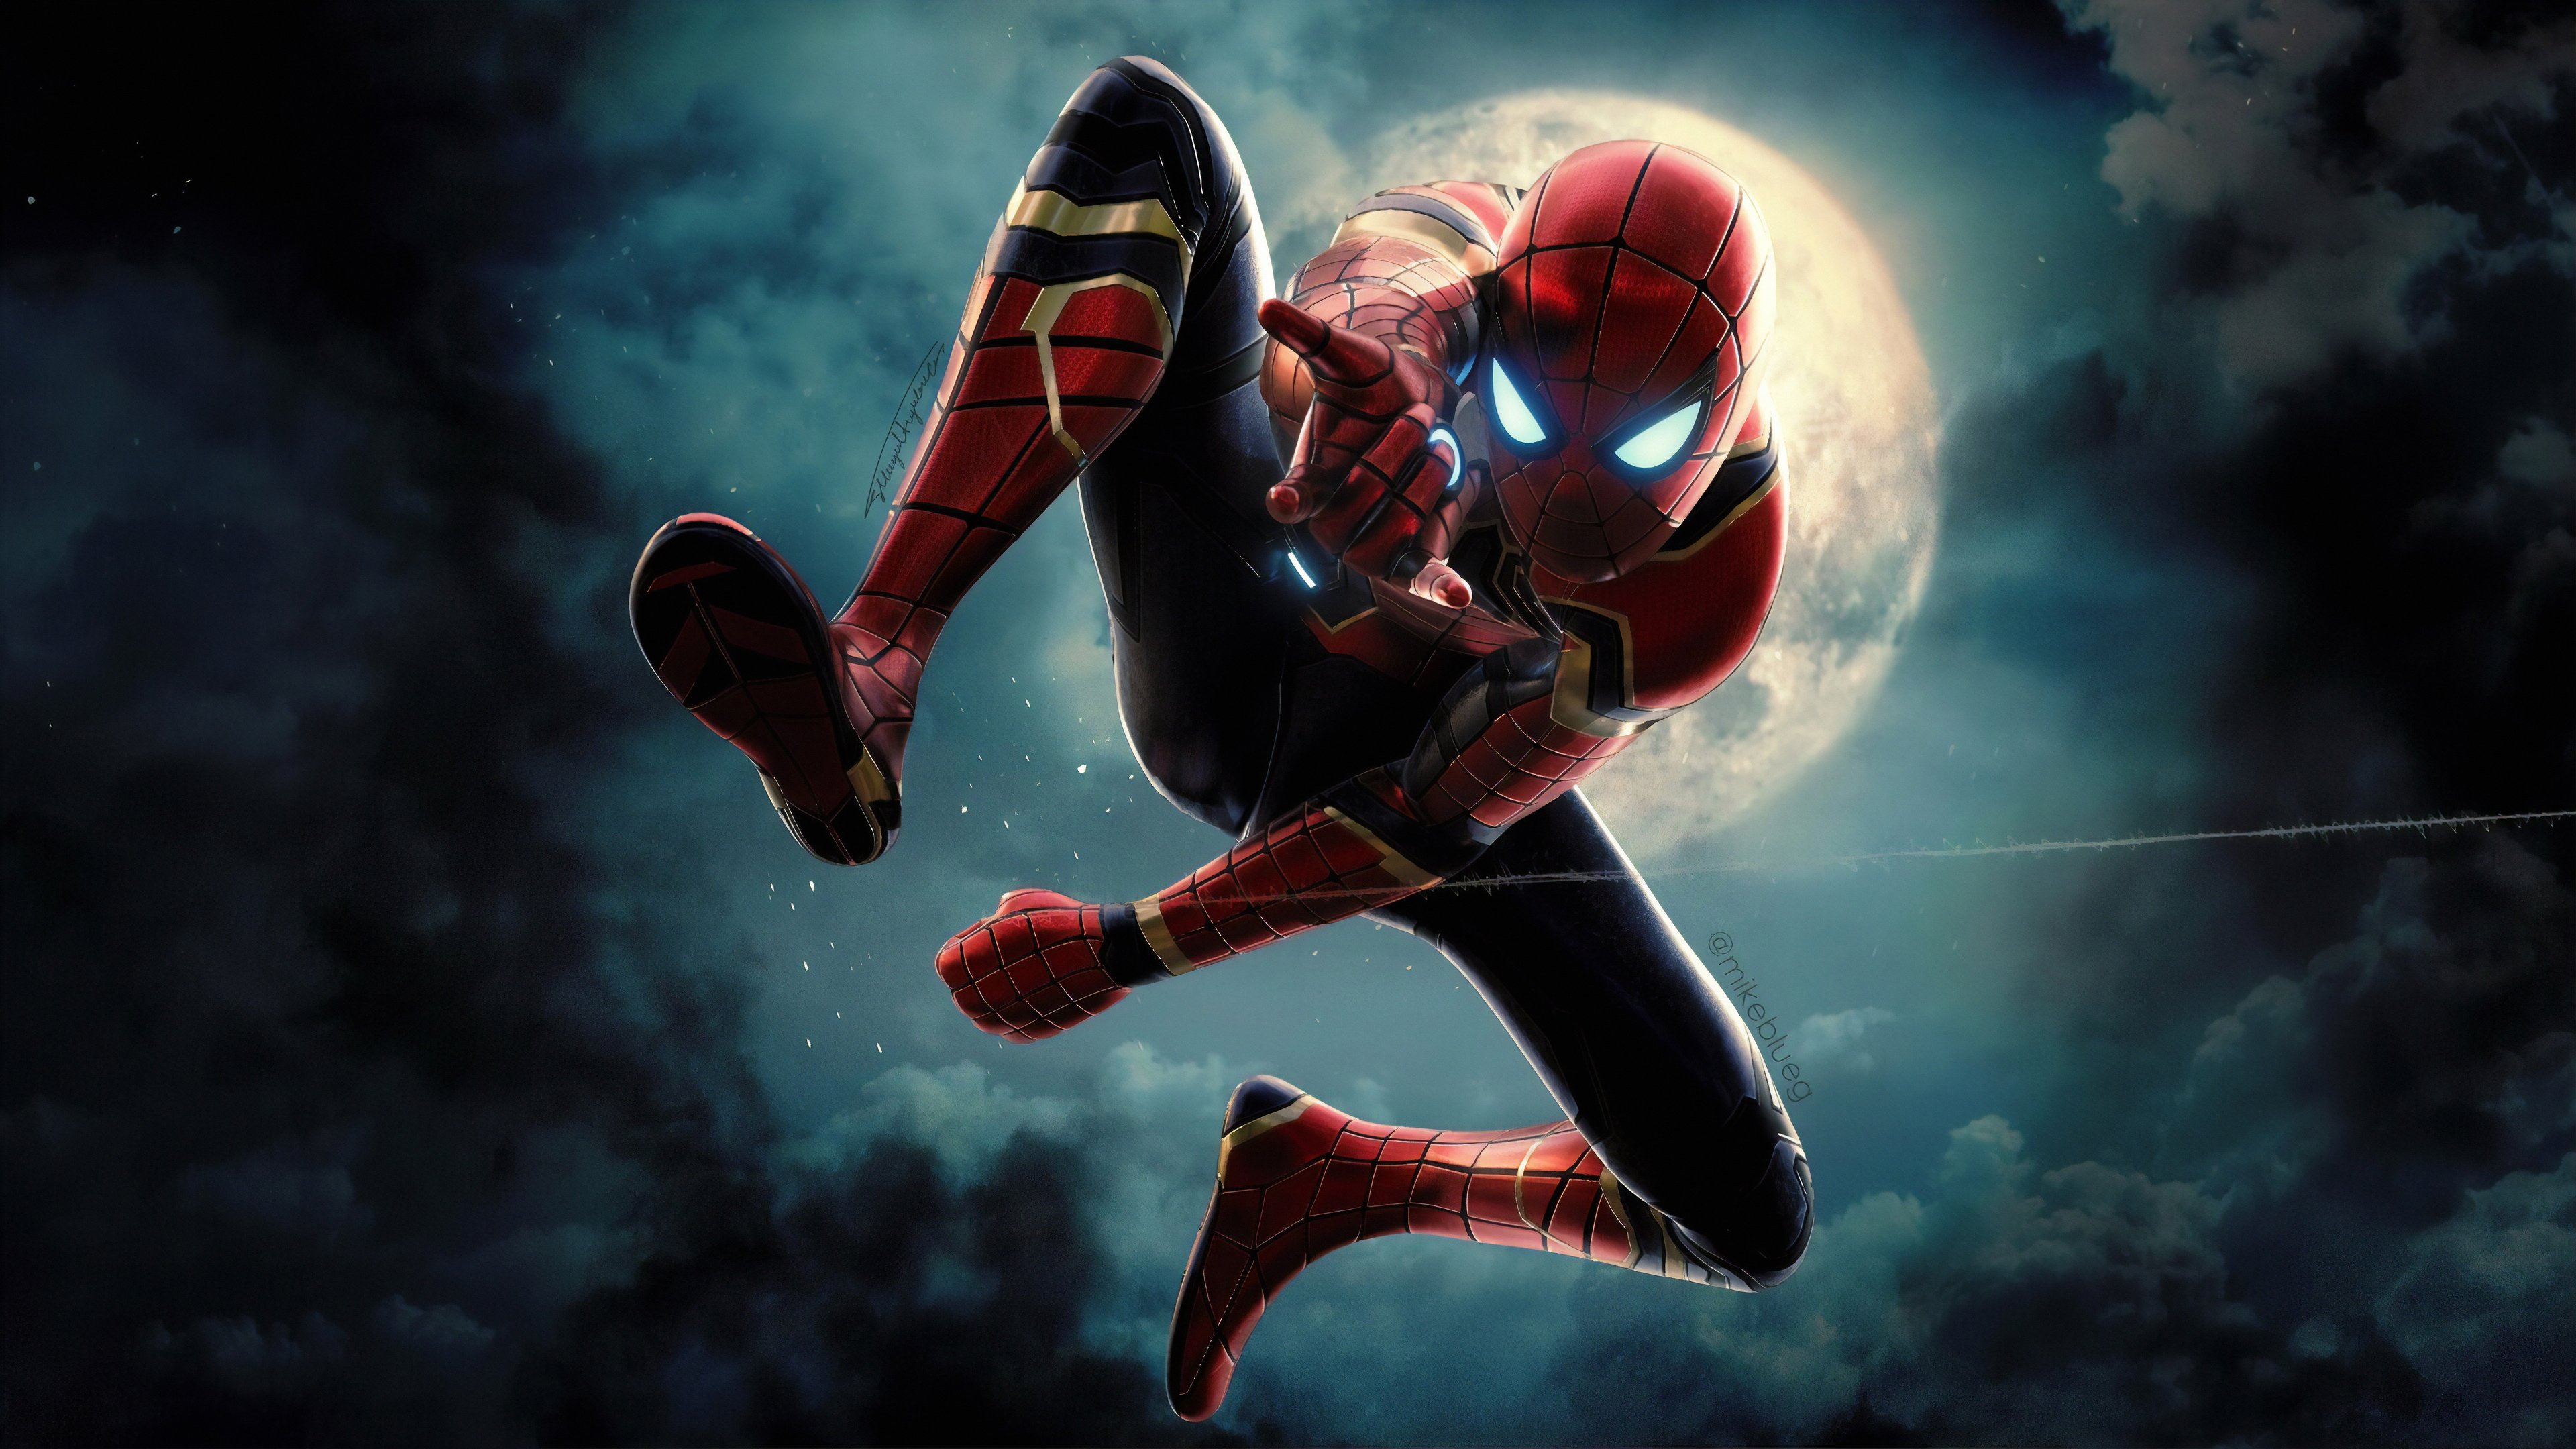 Spiderman New superheroes wallpapers, spiderman wallpapers, hd